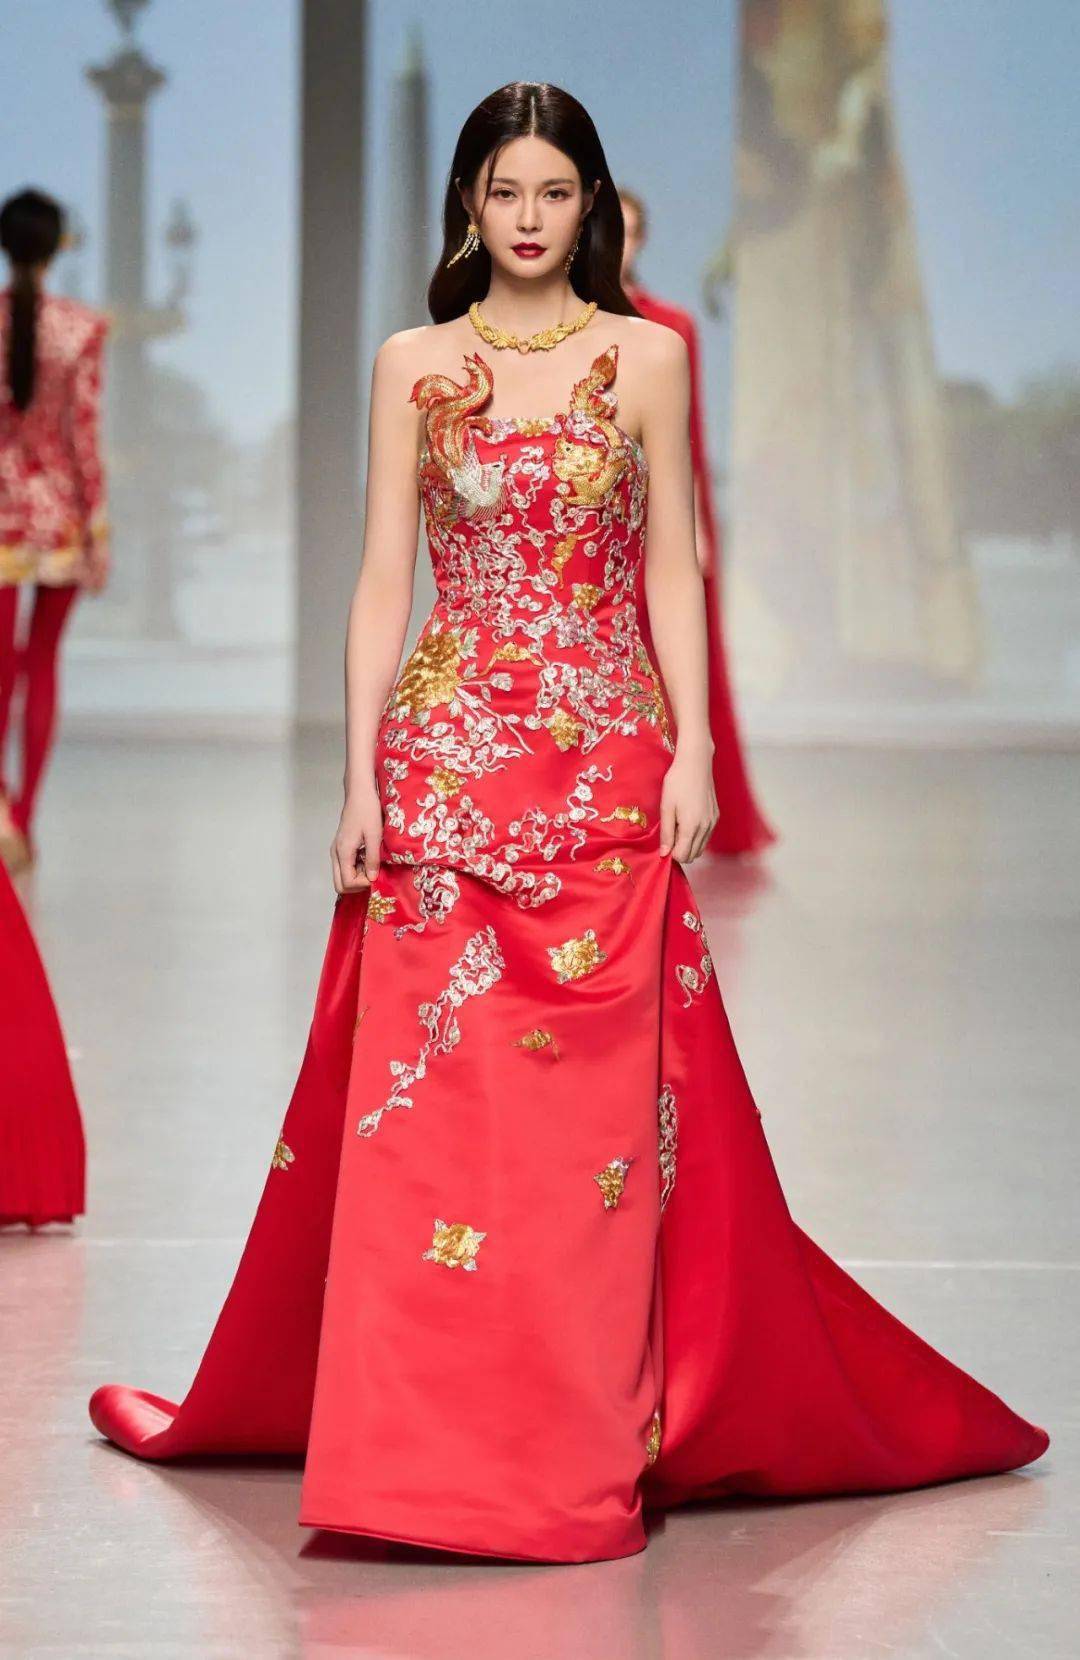 迪阿股份亮相巴黎时装周,中国高级珠宝反向攻略欧洲